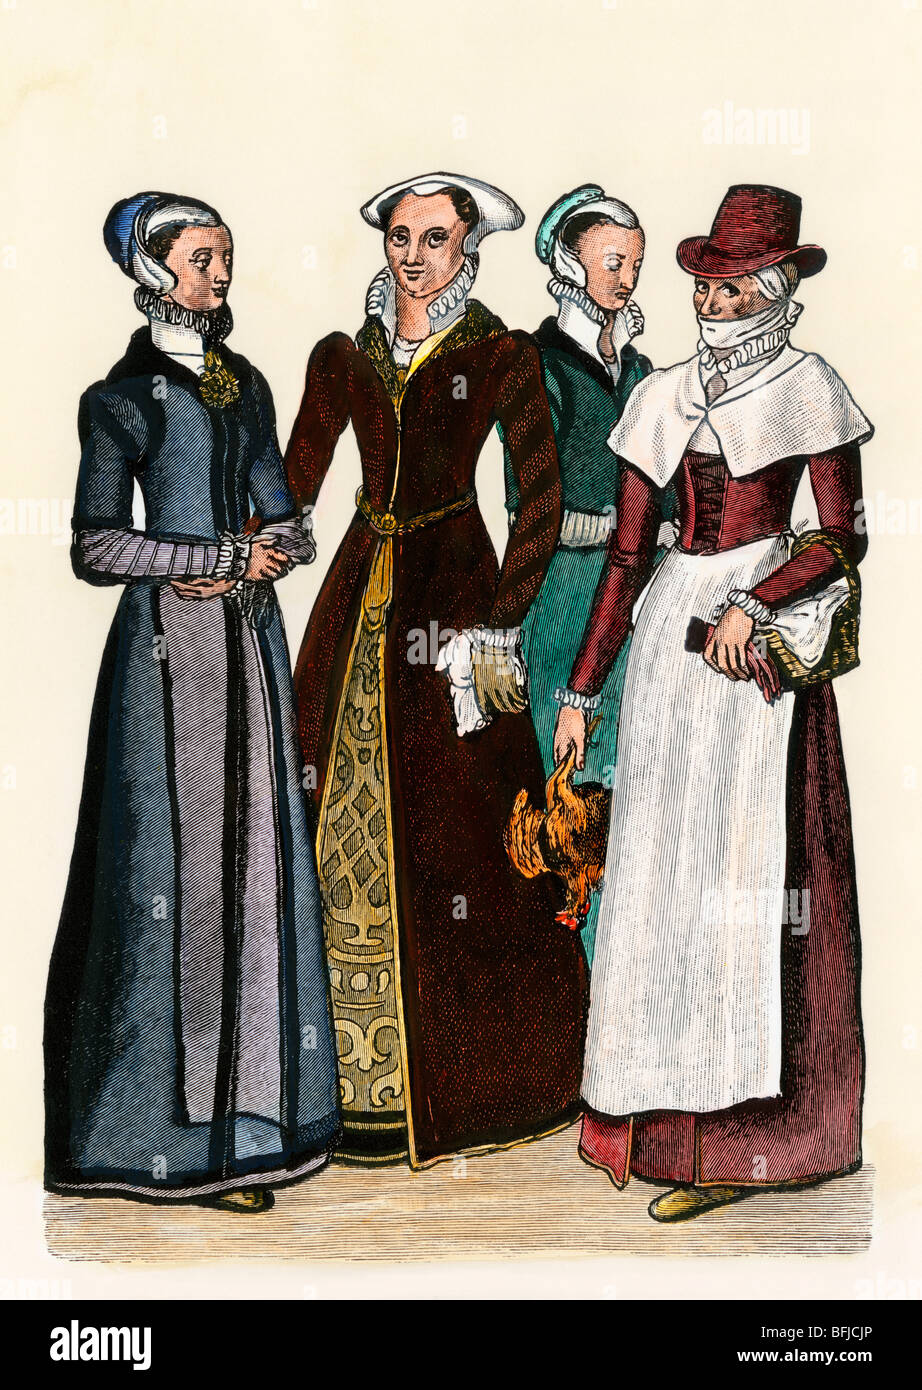 Les femmes de la ville et un pays-femme dans l'Angleterre élisabéthaine, années 1500. À la main, gravure sur bois Banque D'Images